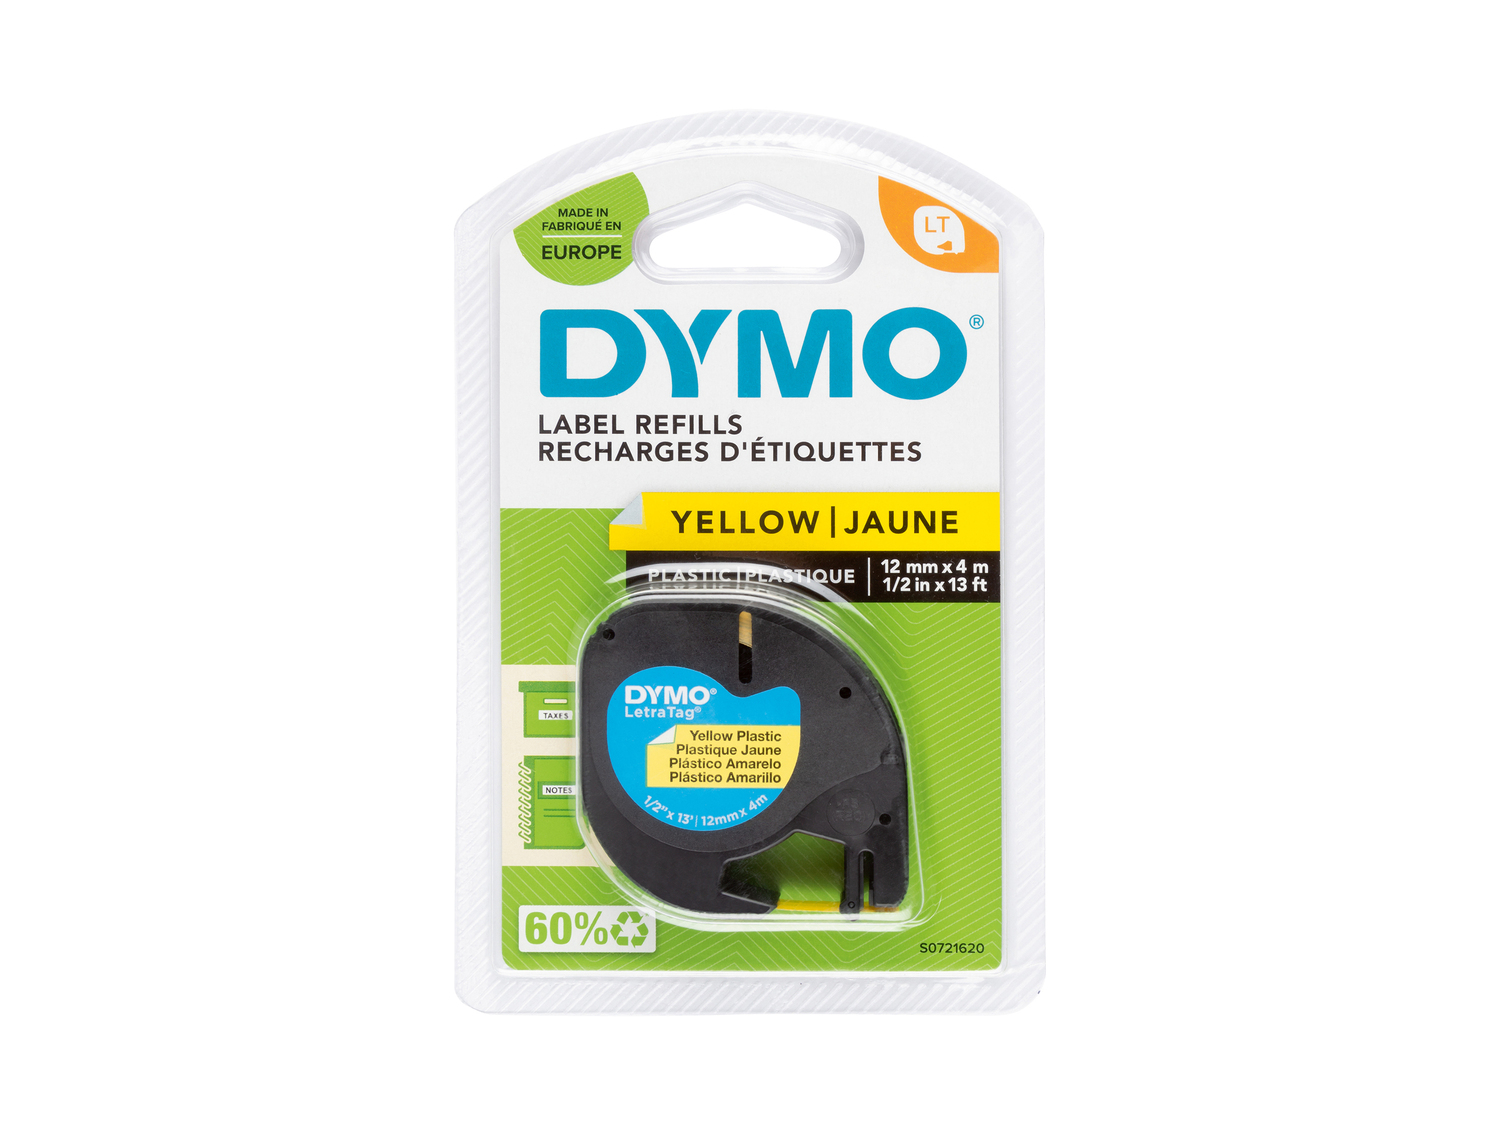 Nastro di ricambio per etichettatrice Dymo, prezzo 5.99 &#8364; 
- 12 mm x 4 ...